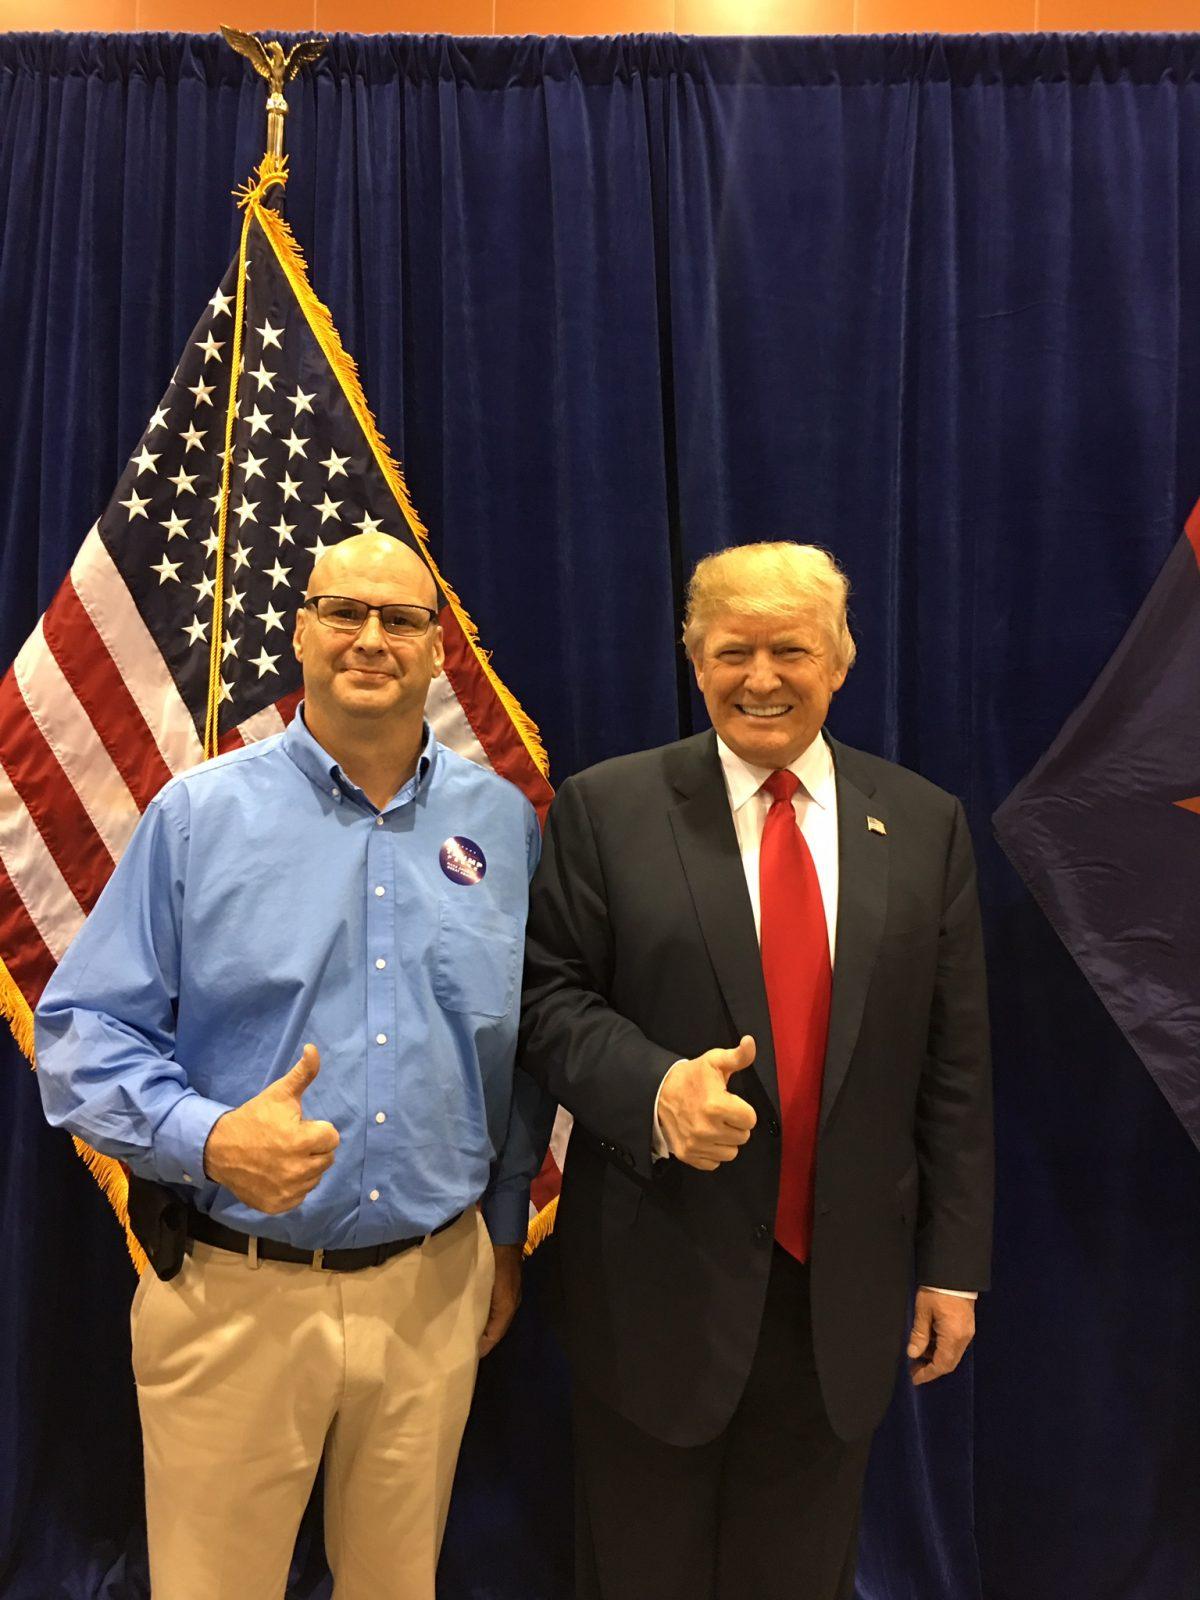 Steve Ronnebeck and President Donald Trump. (Courtesy Steve Ronnebeck)